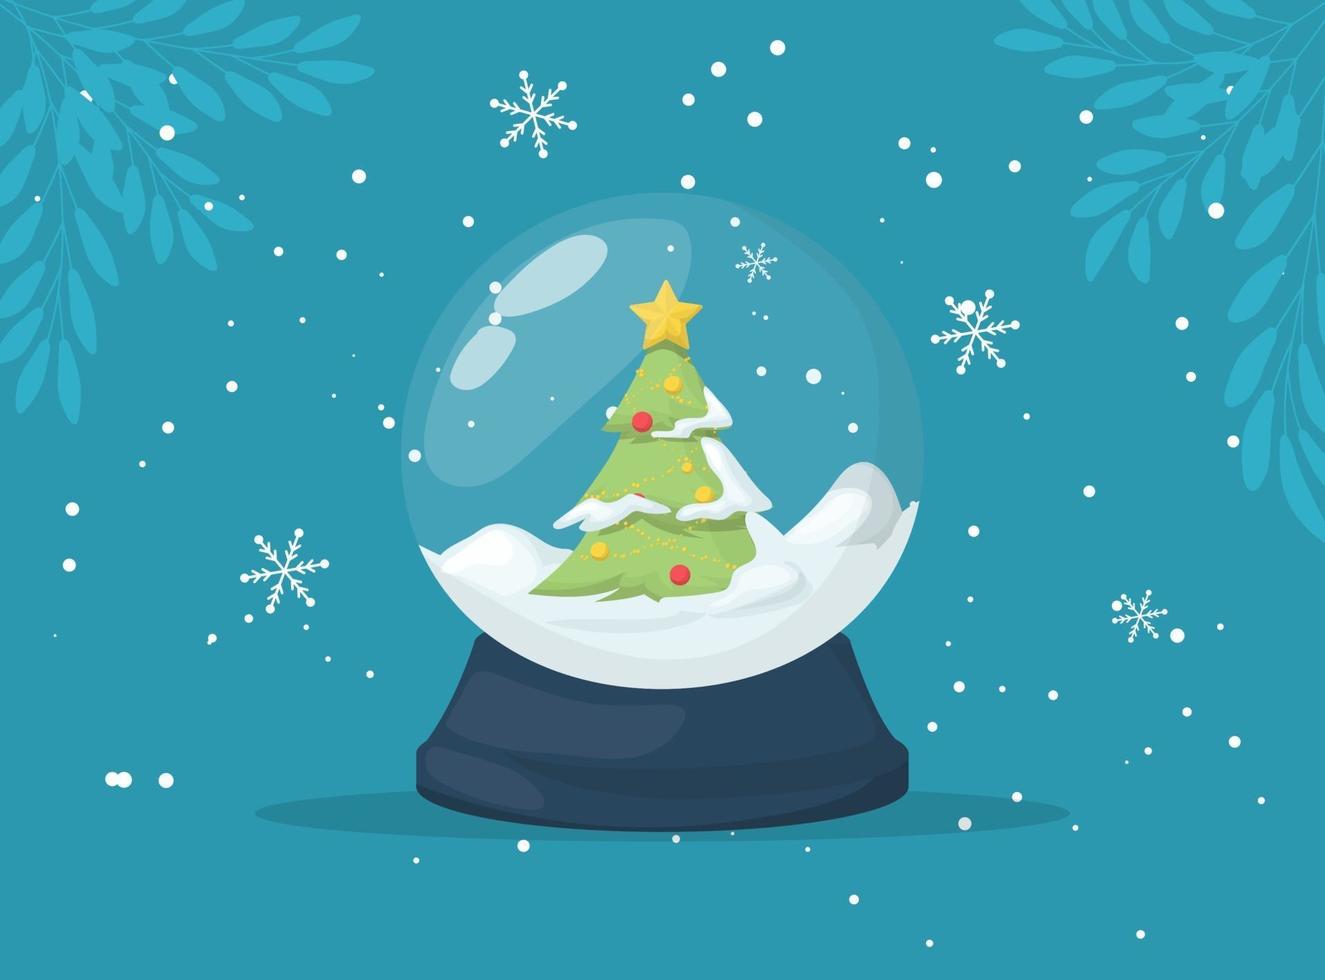 globo de neve de Natal com neve caindo e árvore de Natal, ilustração vetorial. vetor